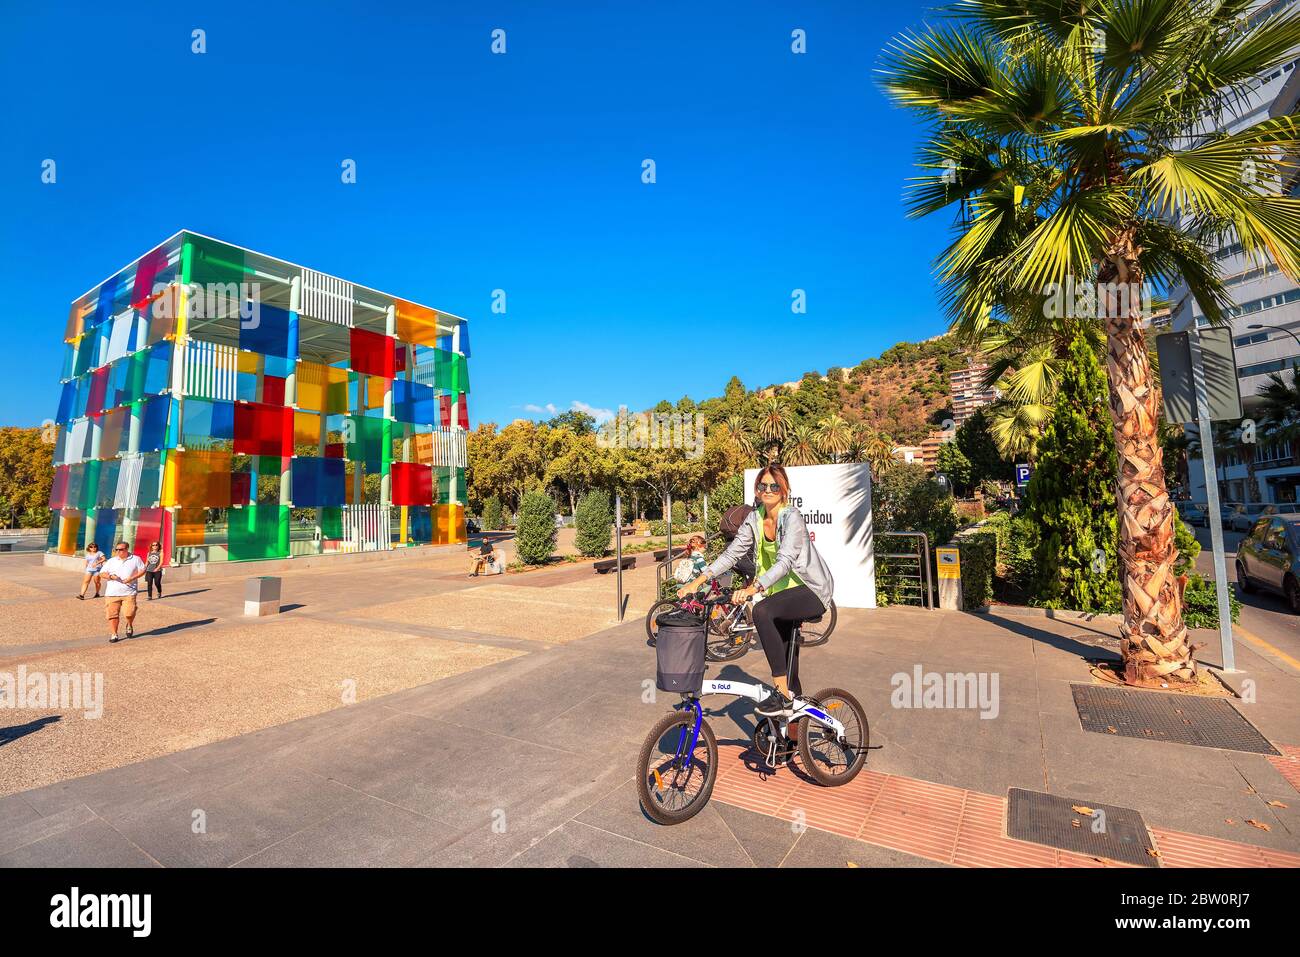 Scène de rue avec une jeune femme sur vélo contre fond de cube coloré dans le musée d'art contemporain. Malaga, Espagne Banque D'Images